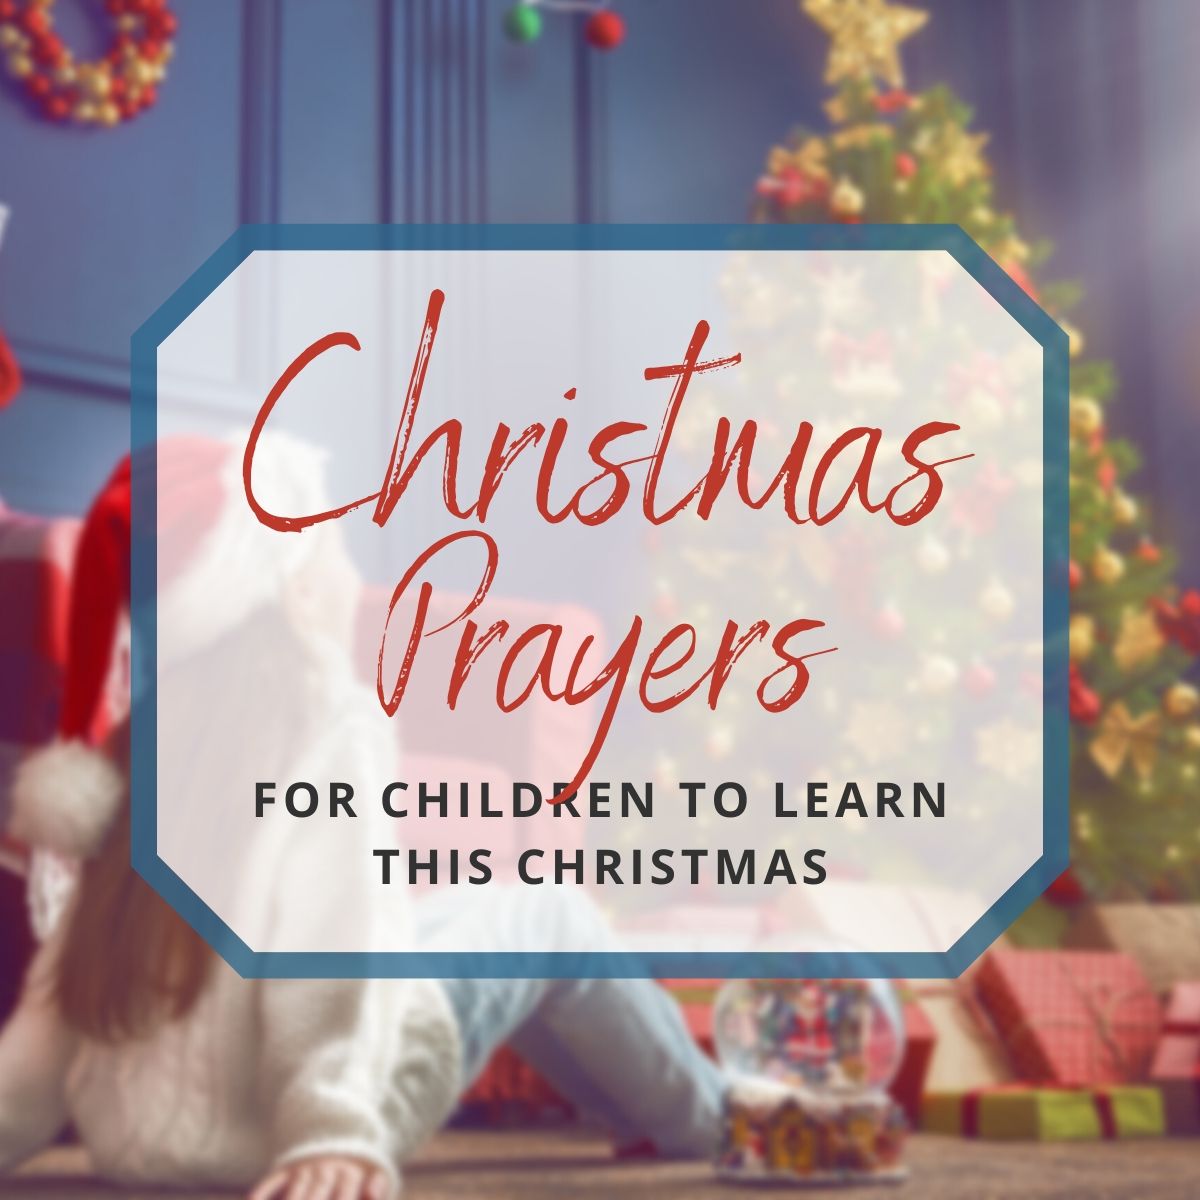 Short Christmas Prayers for Children